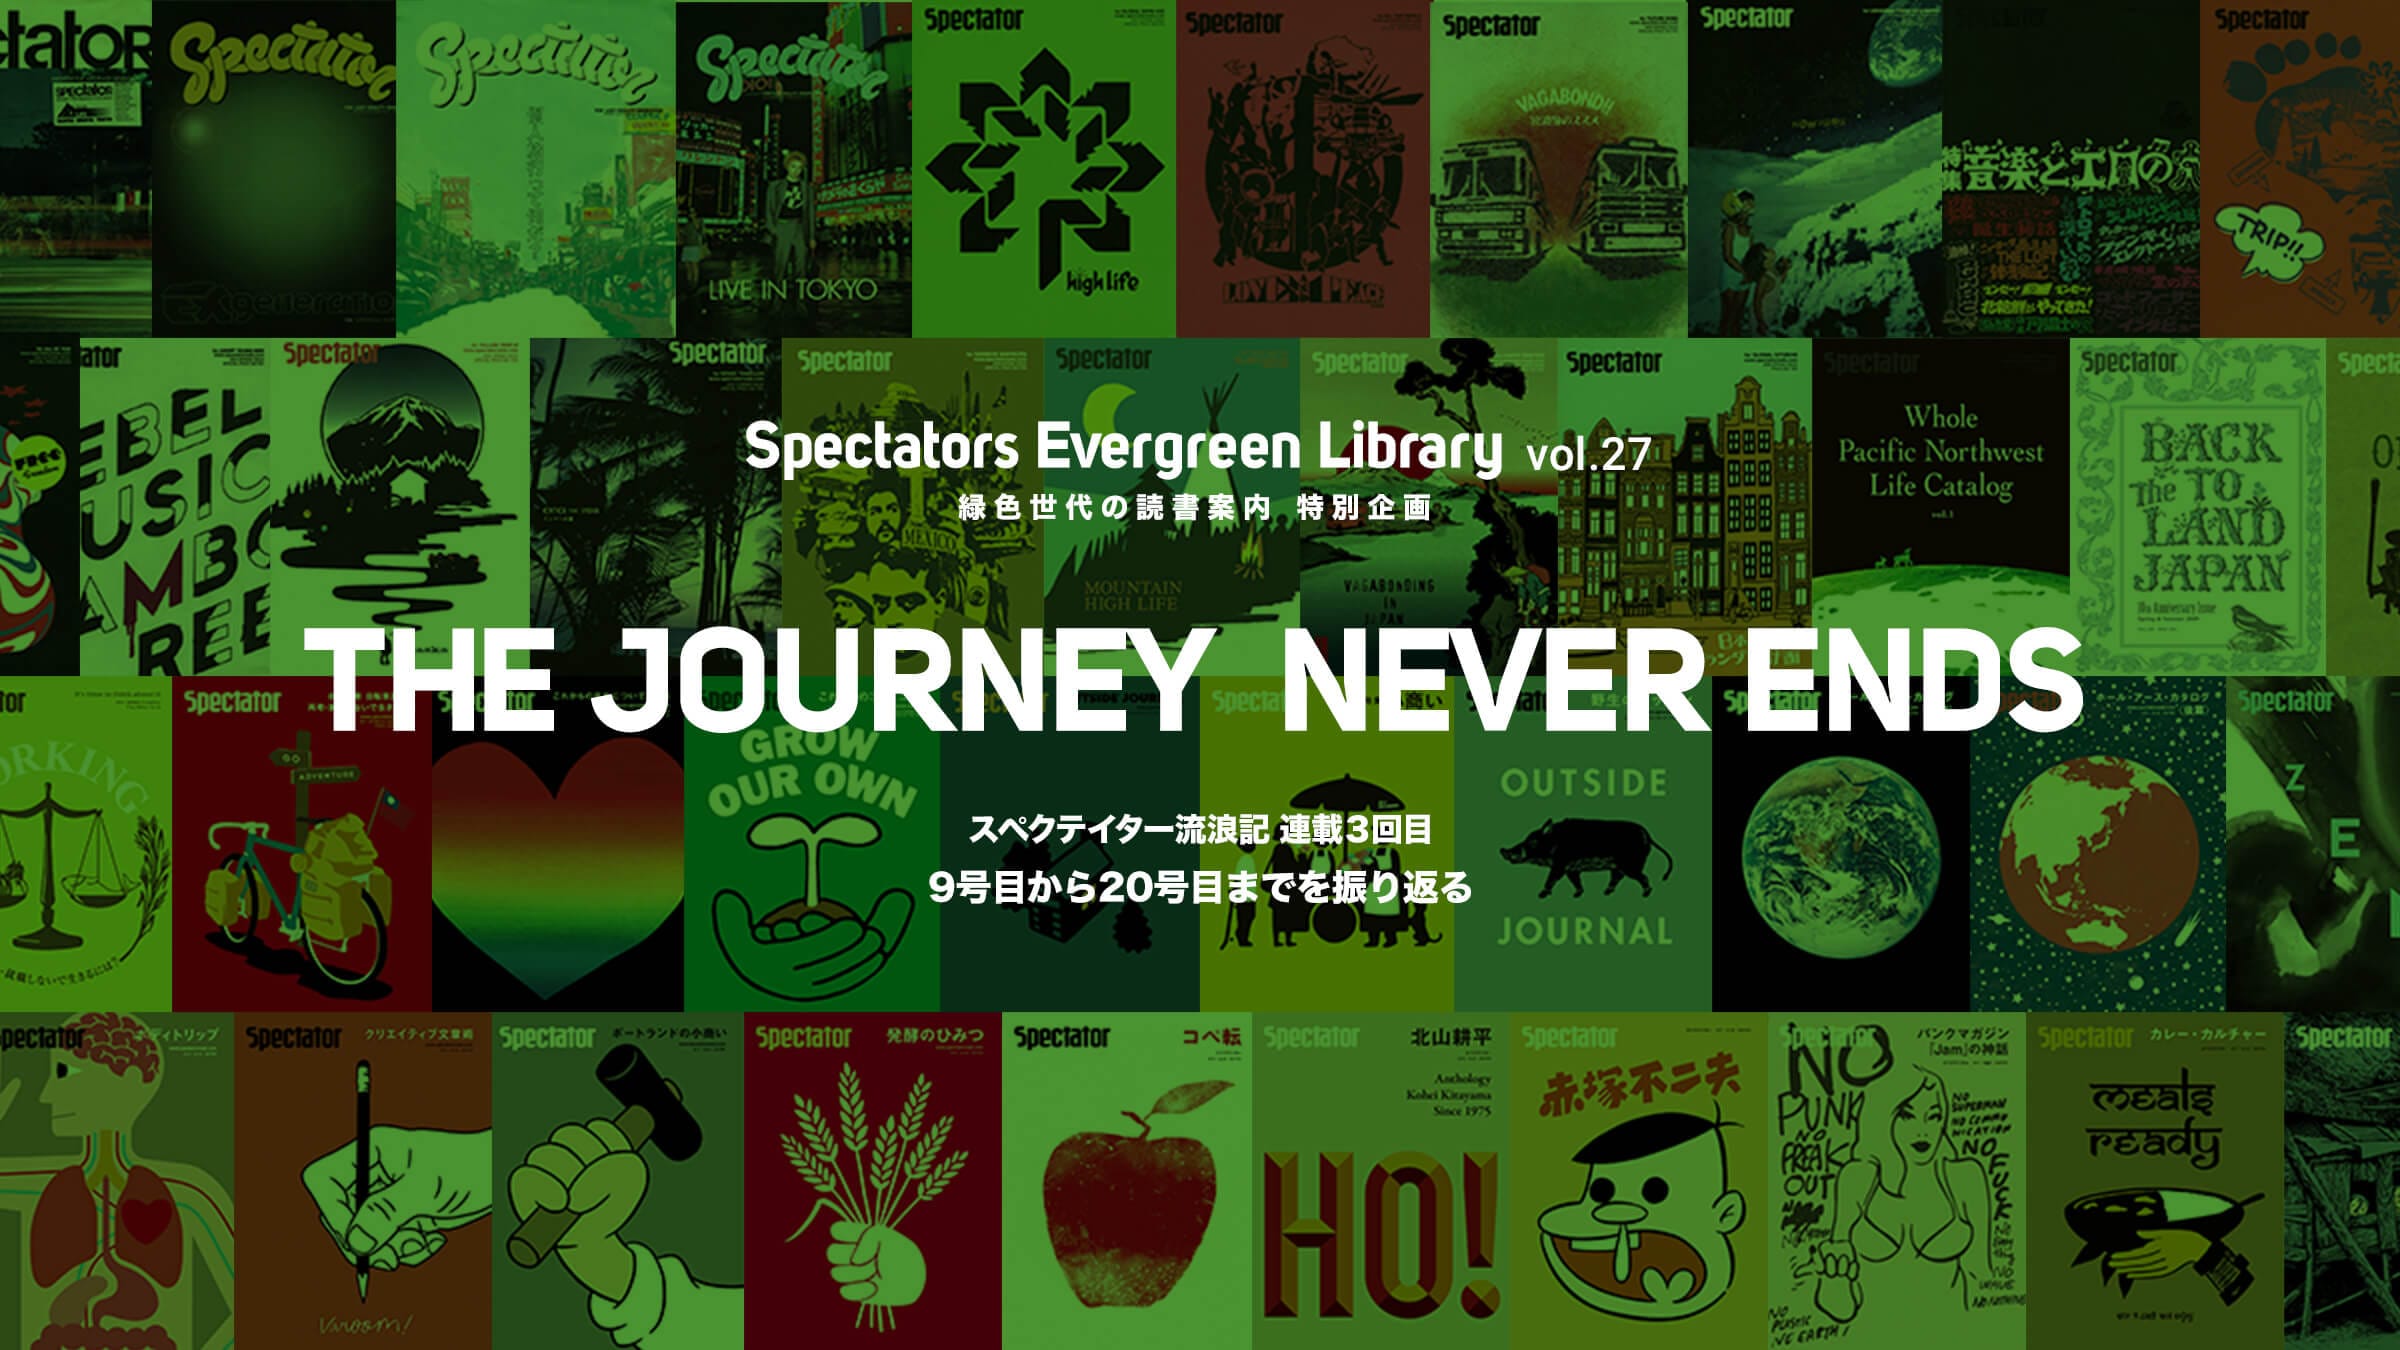 Spectators Evergreen Library Vol 27 緑色世代の読書案内 特別企画 新連載 The Journey Never Ends 第3回スペクテイター9号目から号目までを振り返る 丨 Ships S Eye